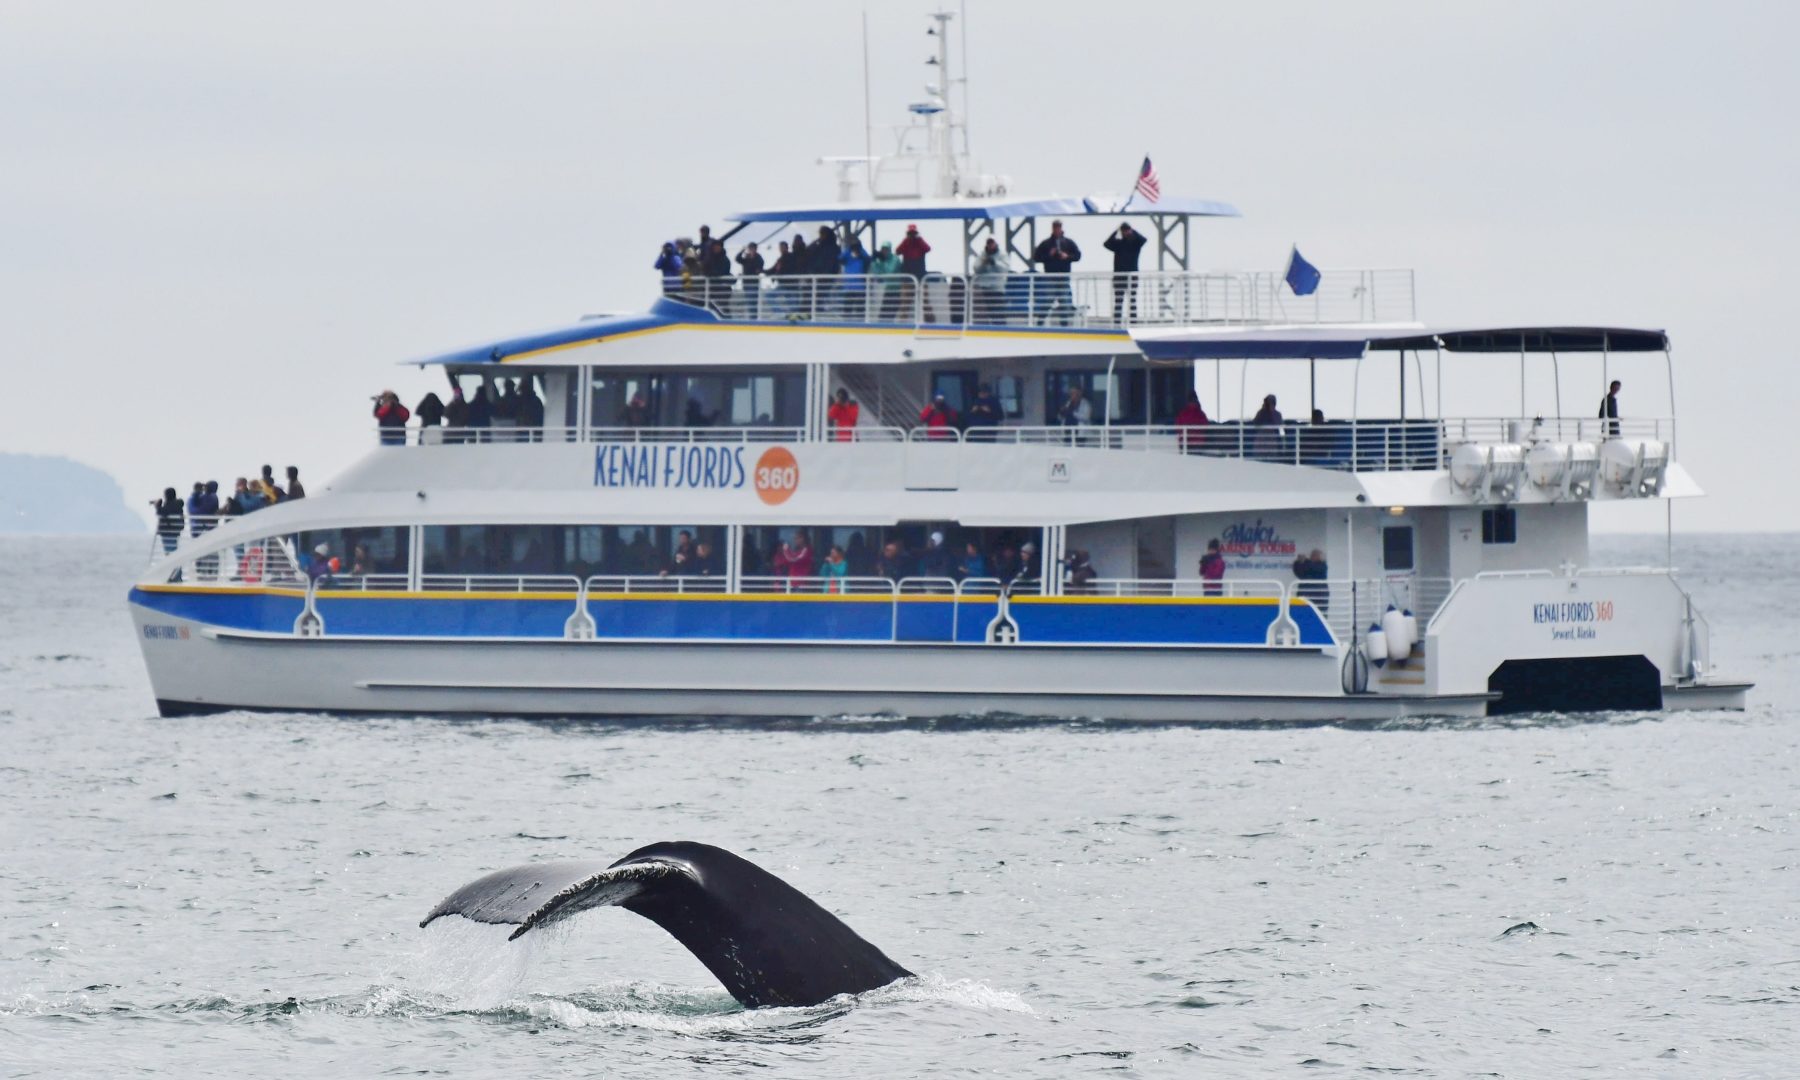 Kenai Fjords 360 and humpback